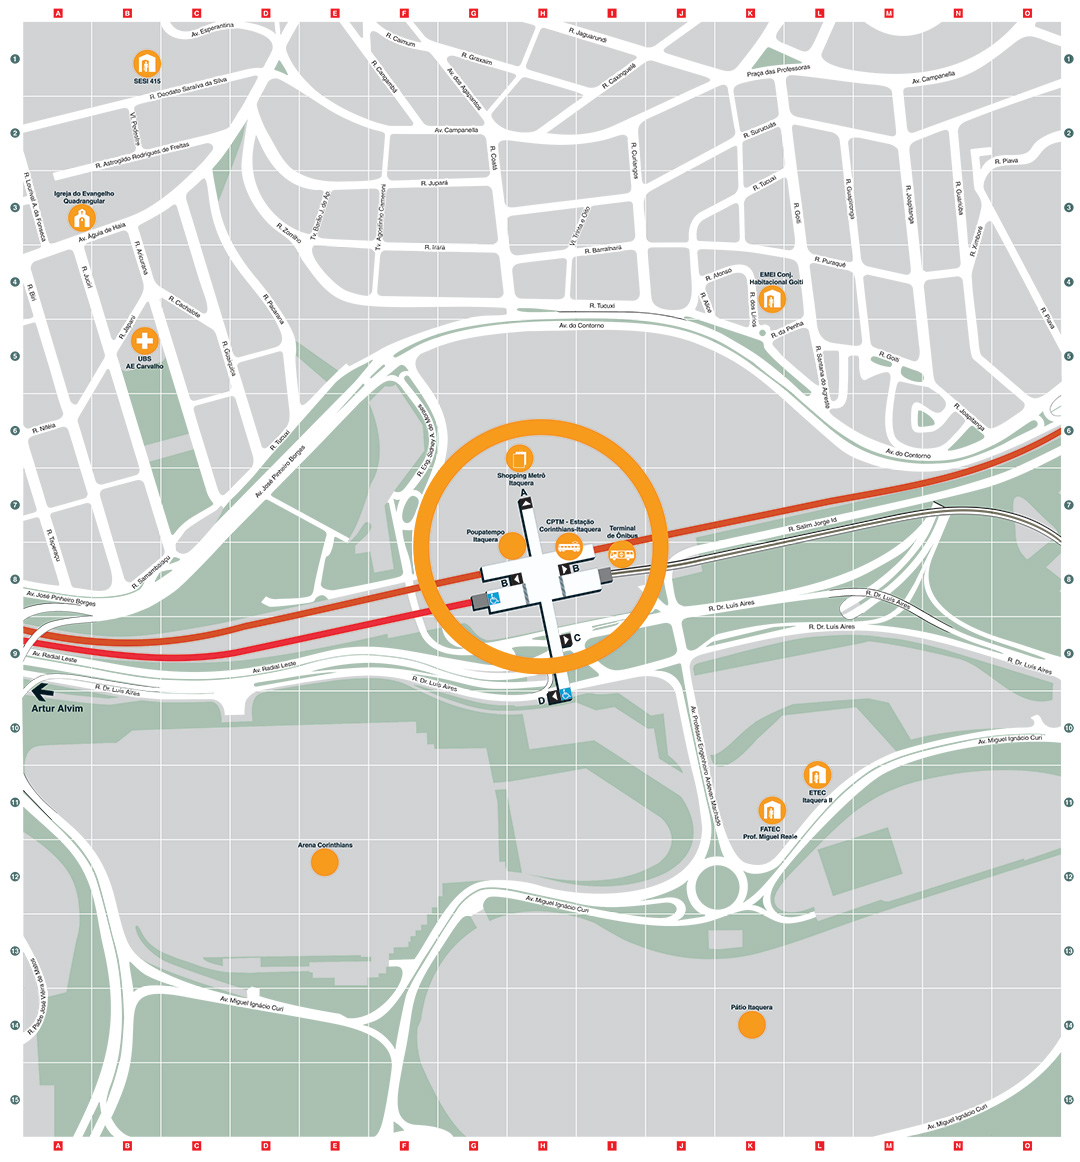 Mapa dos arredores da Estação Corinthians-Itaquera